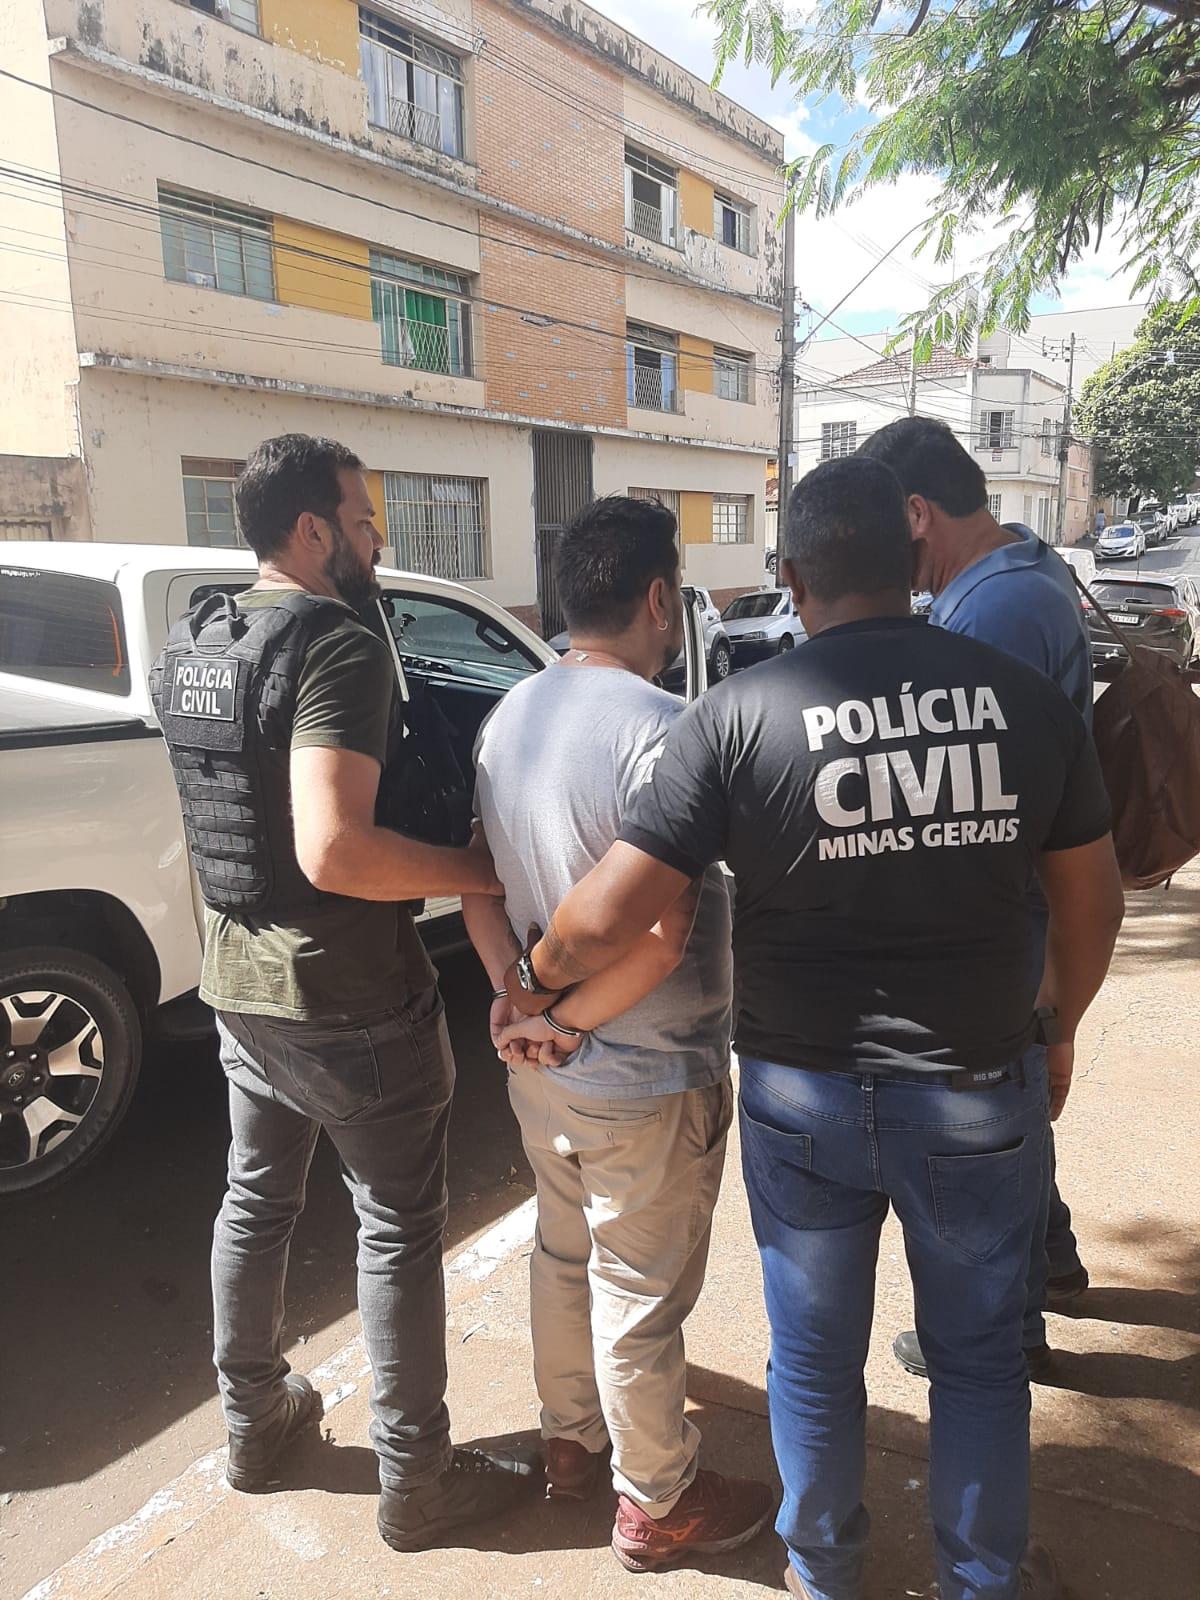 Policia Civil em Uberaba apoiou Policia Civil de Goiás no cumprimento de dois mandados de prisão de acusados de envolvimento no desvio de carga (Foto/Divulgação)